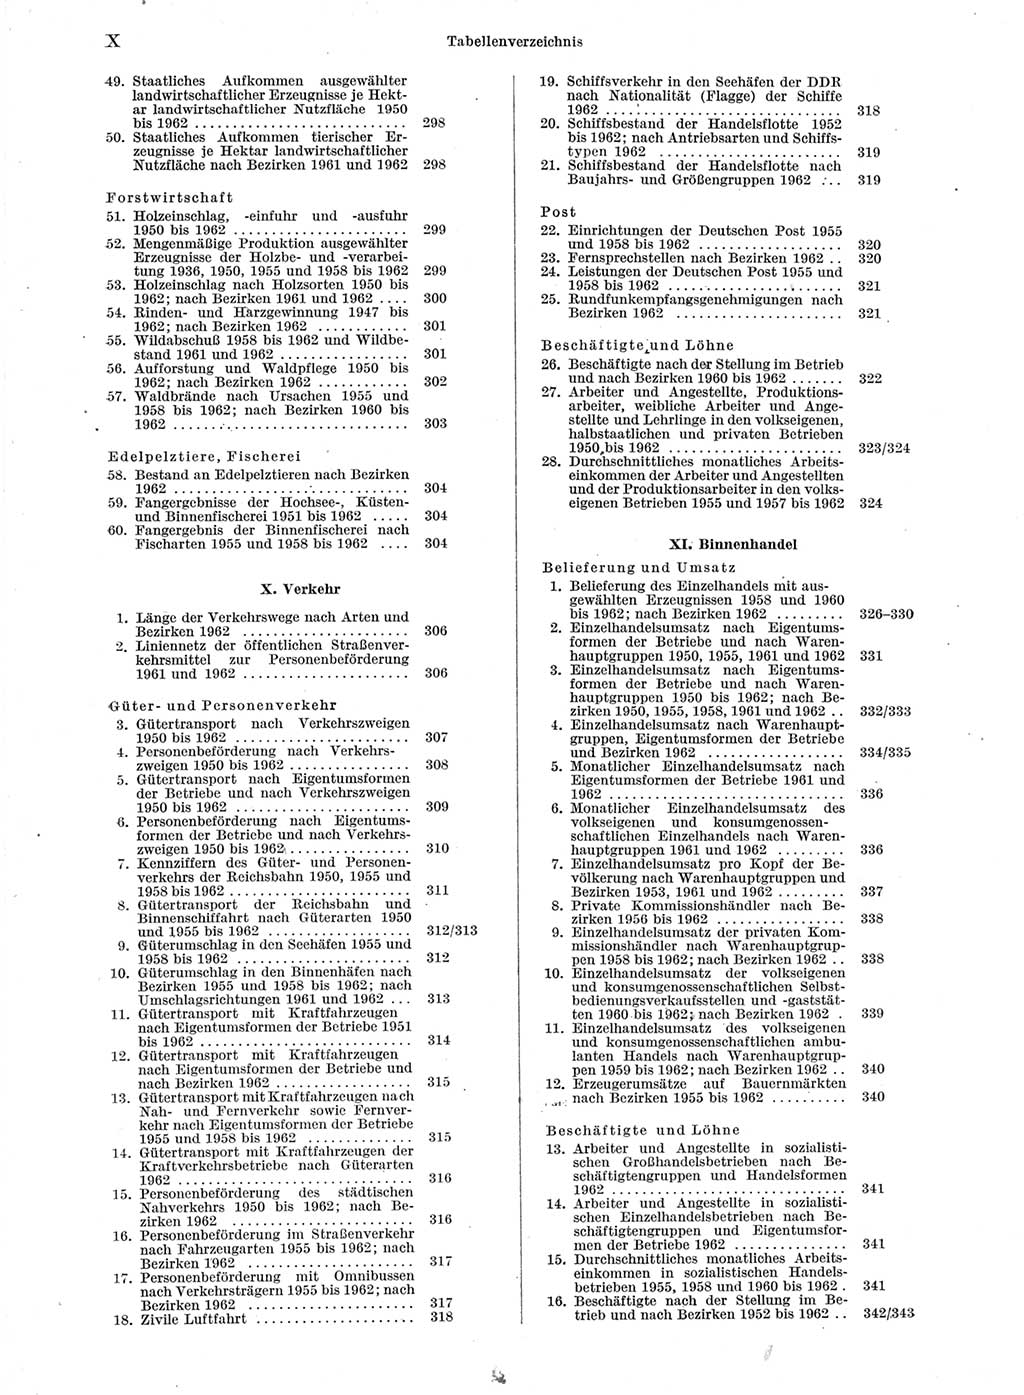 Statistisches Jahrbuch der Deutschen Demokratischen Republik (DDR) 1963, Seite 10 (Stat. Jb. DDR 1963, S. 10)